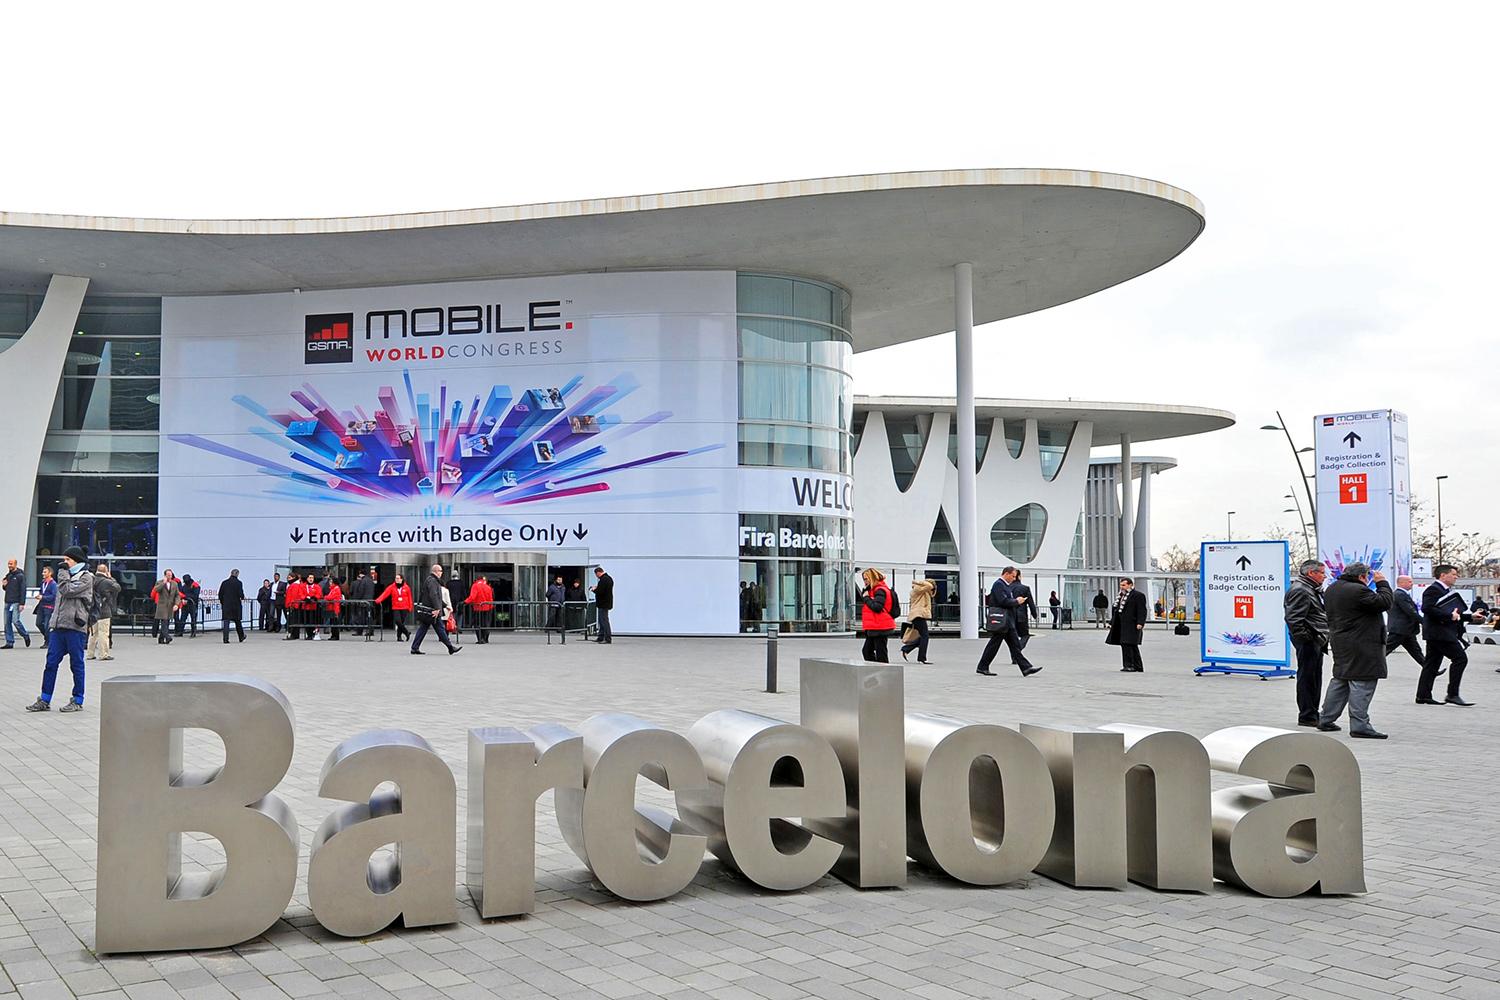 TechEarthBlog vola al Mobile World Congress 2015 di Barcellona per seguire l'evento!